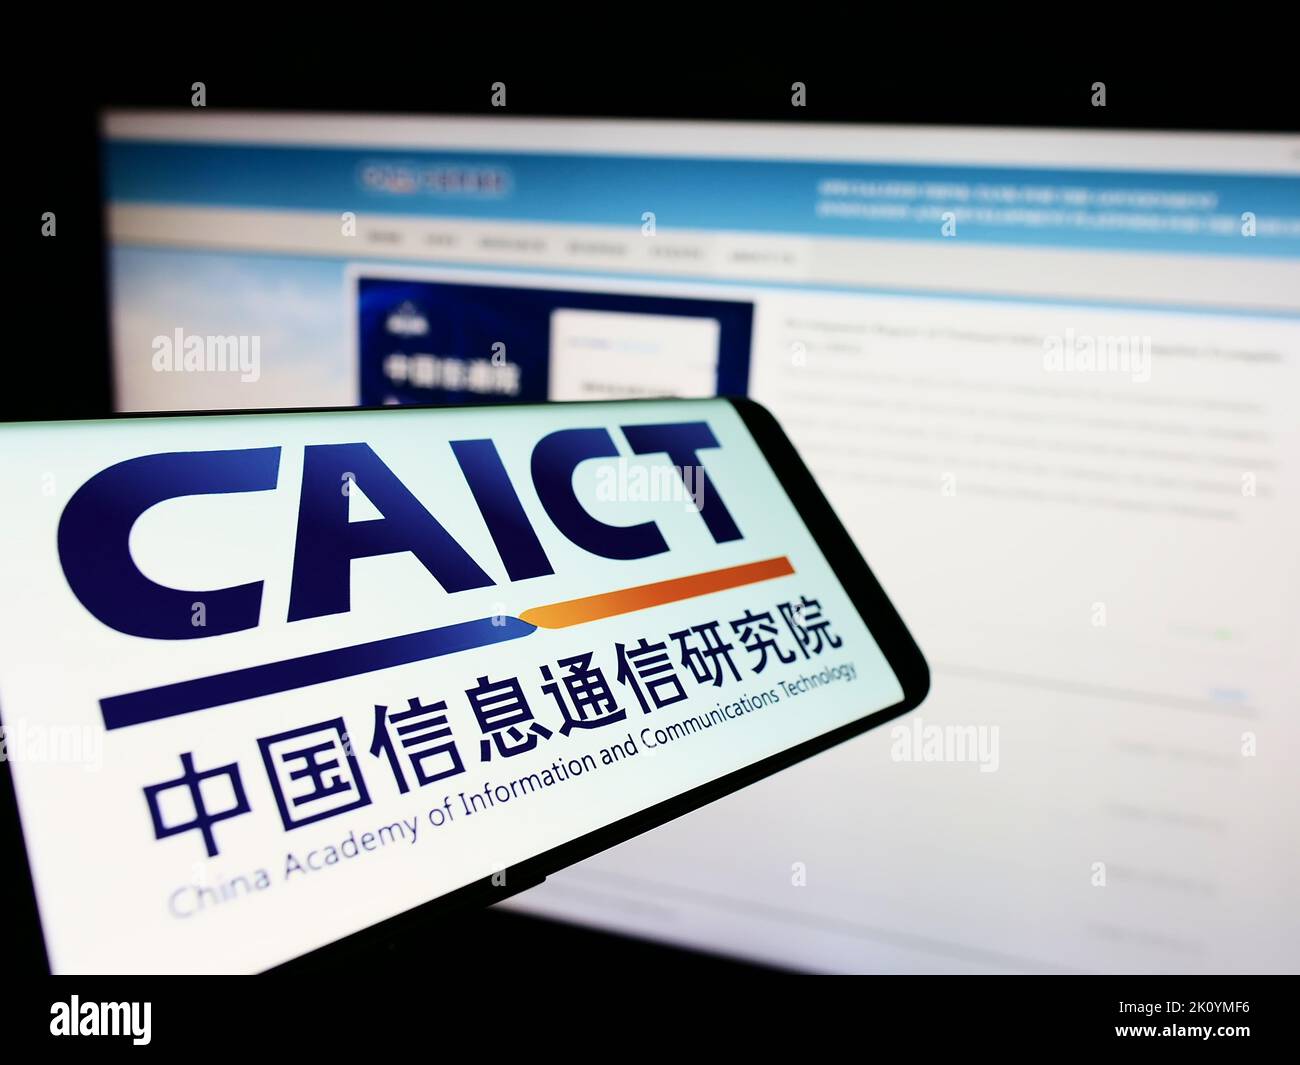 Smartphone con logo dell'istituto cinese di ricerca sulle comunicazioni CAICT sullo schermo davanti al sito web. Messa a fuoco al centro del display del telefono. Foto Stock